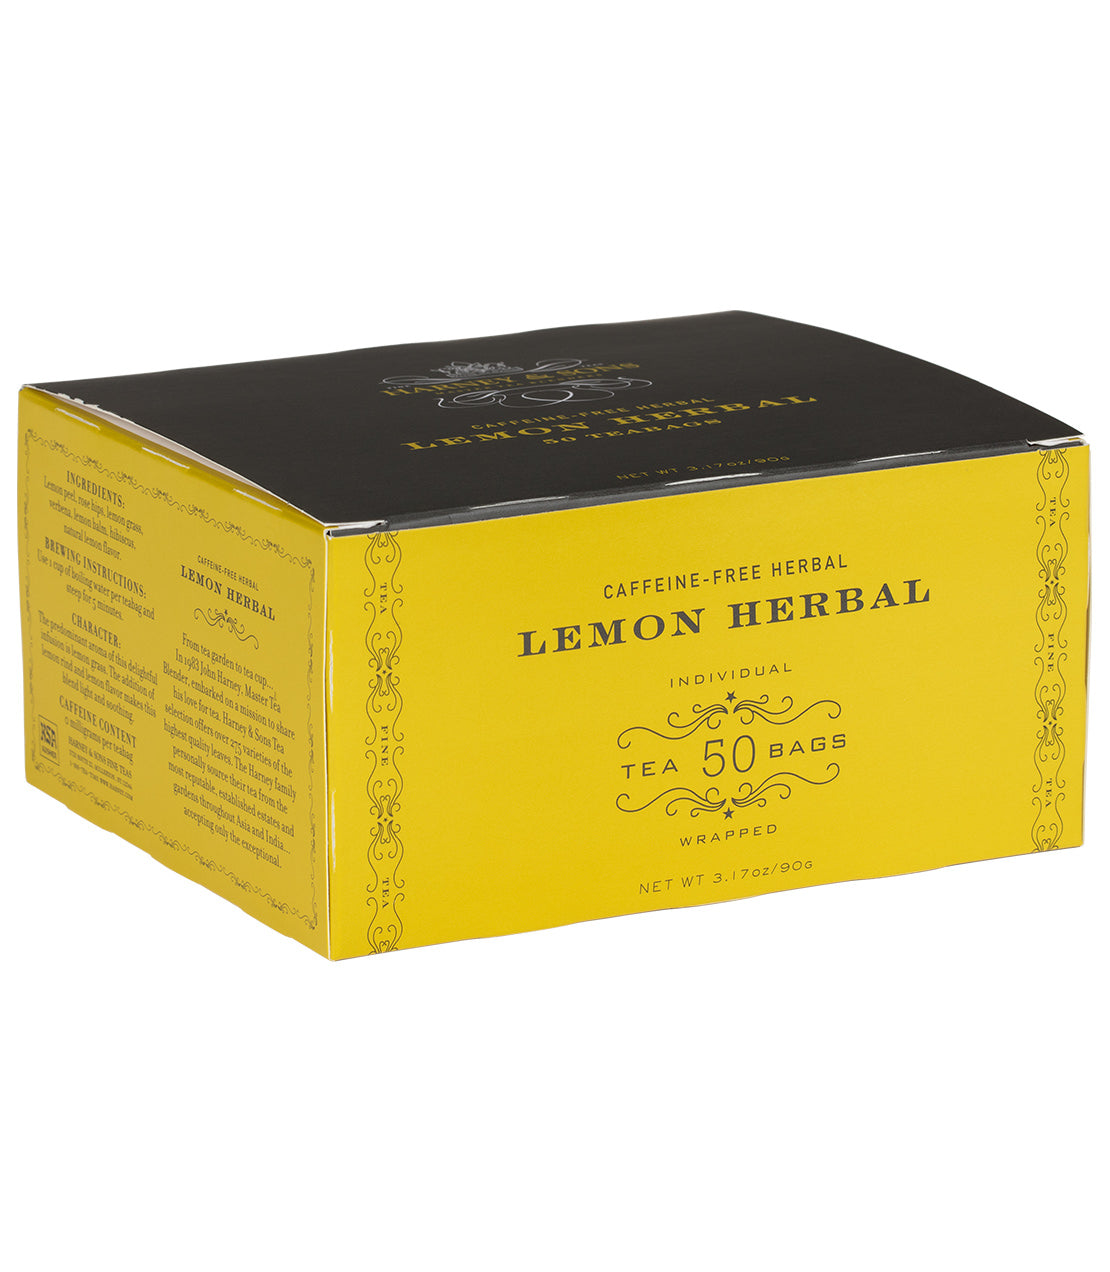 Lemon Herbal, Box of 50 Foil Wrapped Teabags - Teabags Box of 50 Foil Wrapped Teabags - Harney & Sons Fine Teas